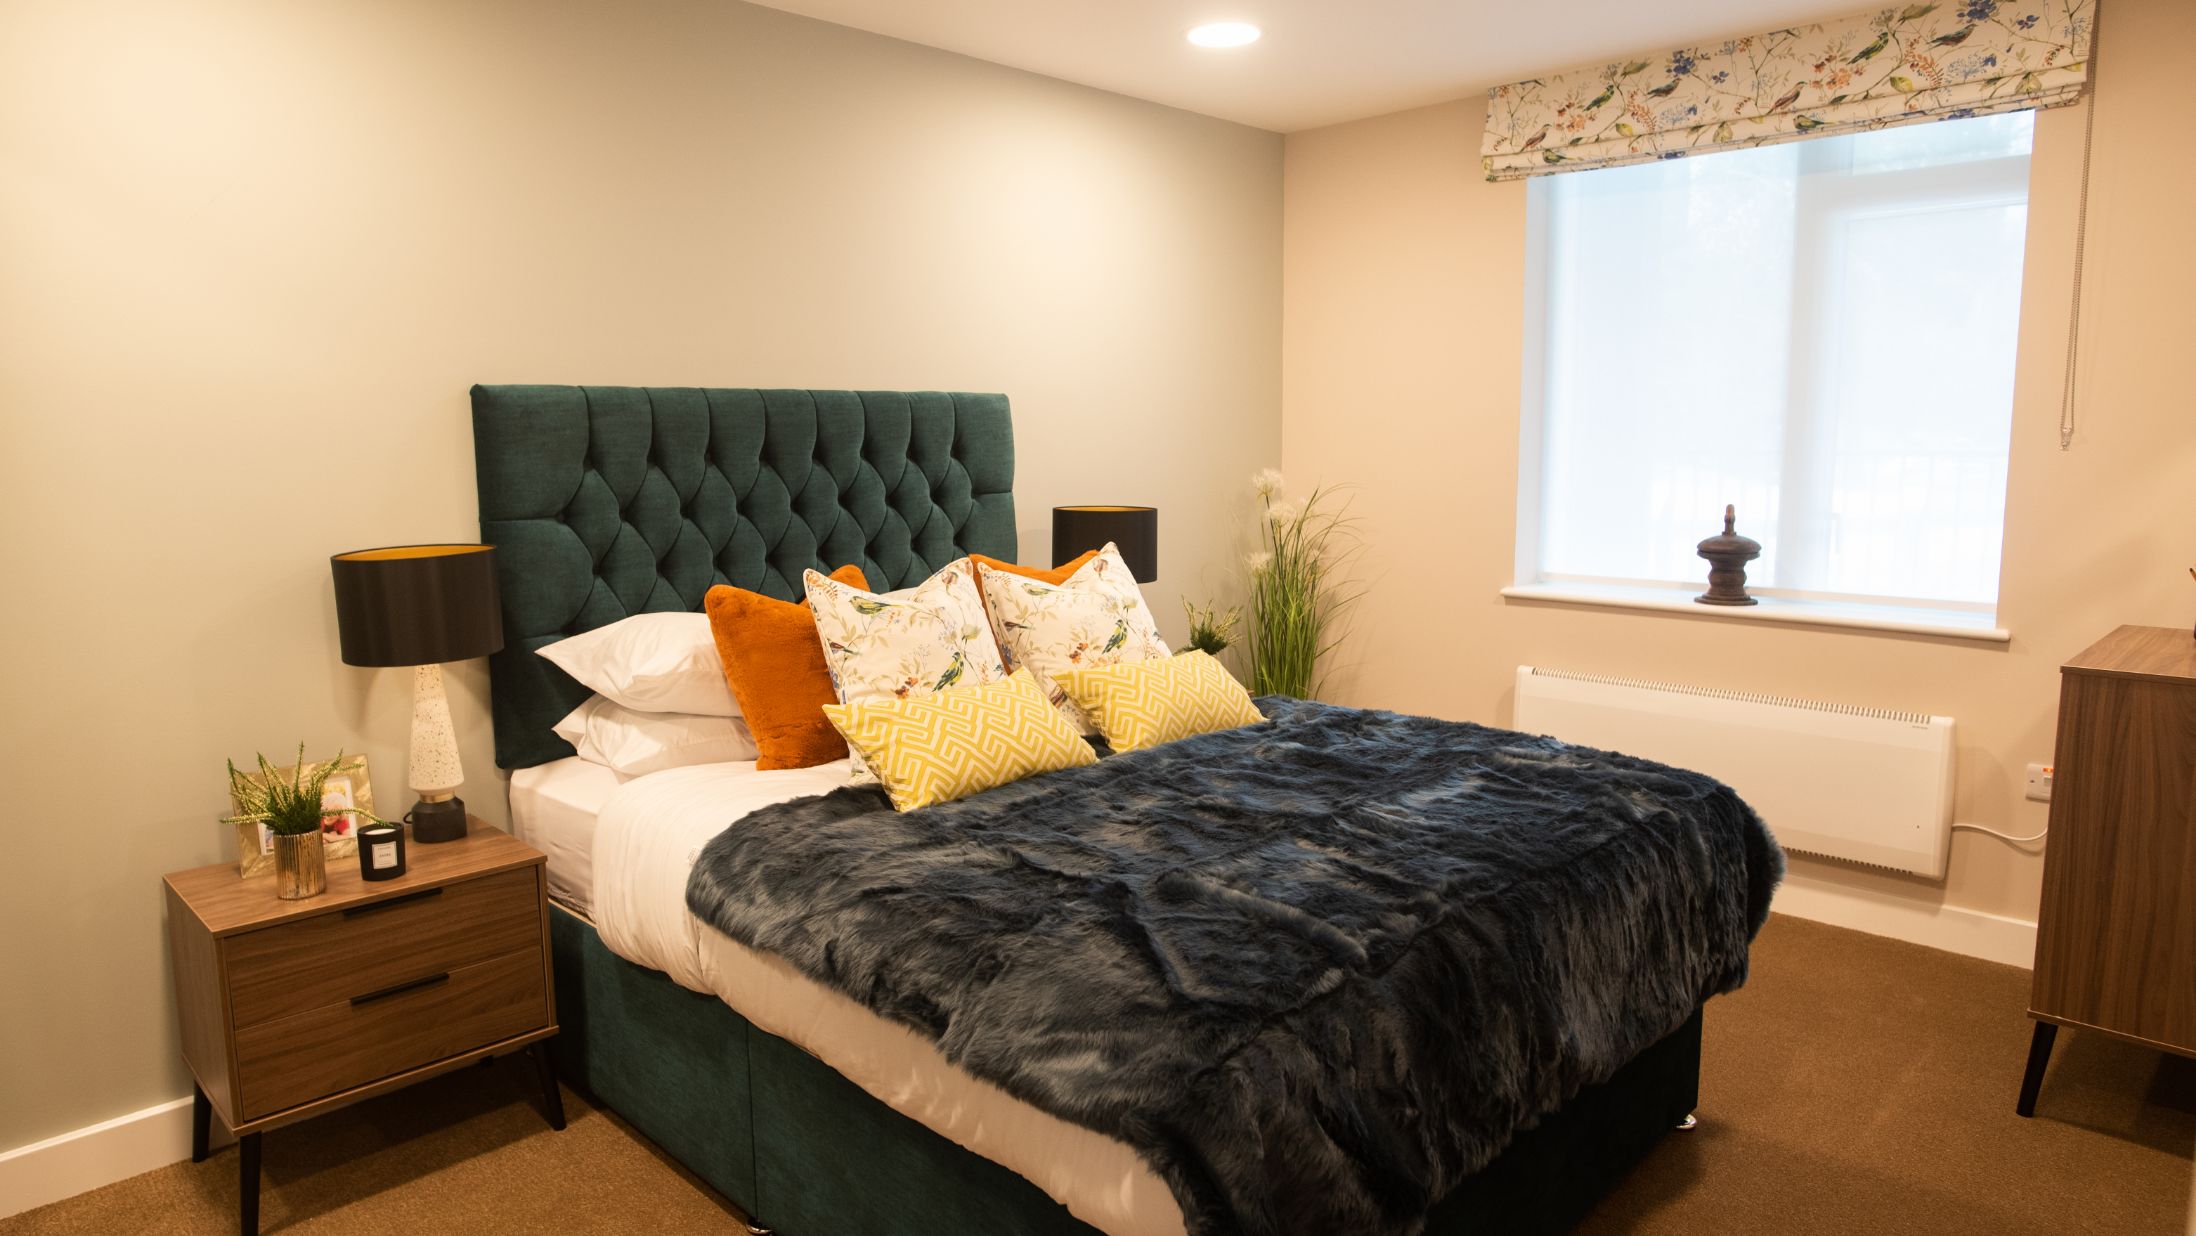 Sandringham accommodation room